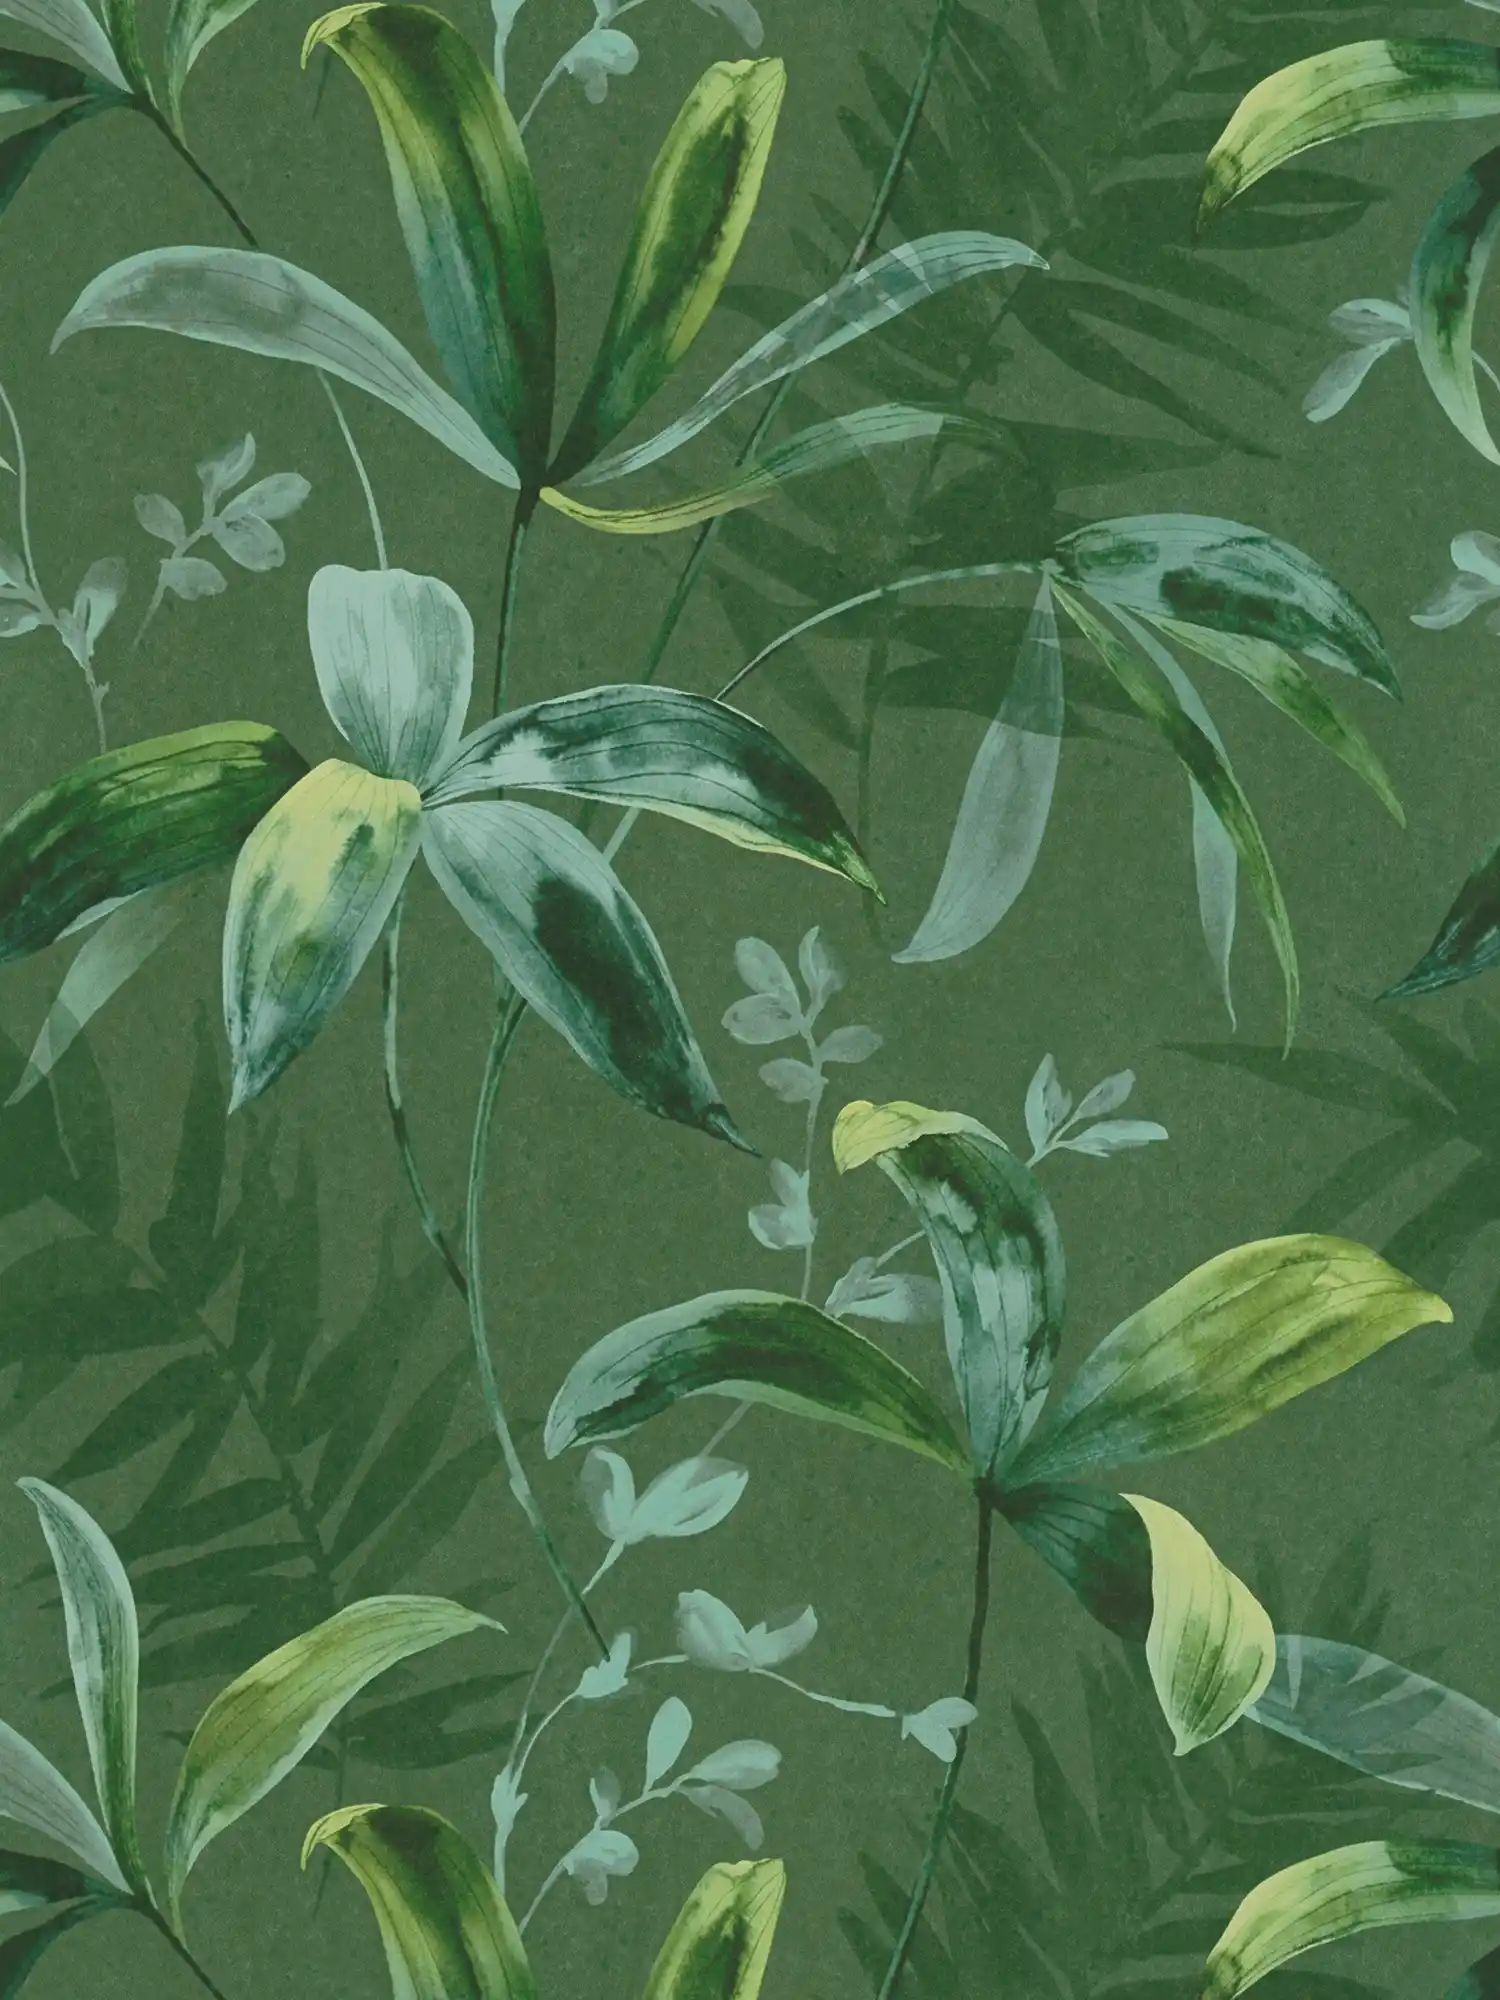 vliesbehang groene bladeren patroon in aquarel stijl - groen
